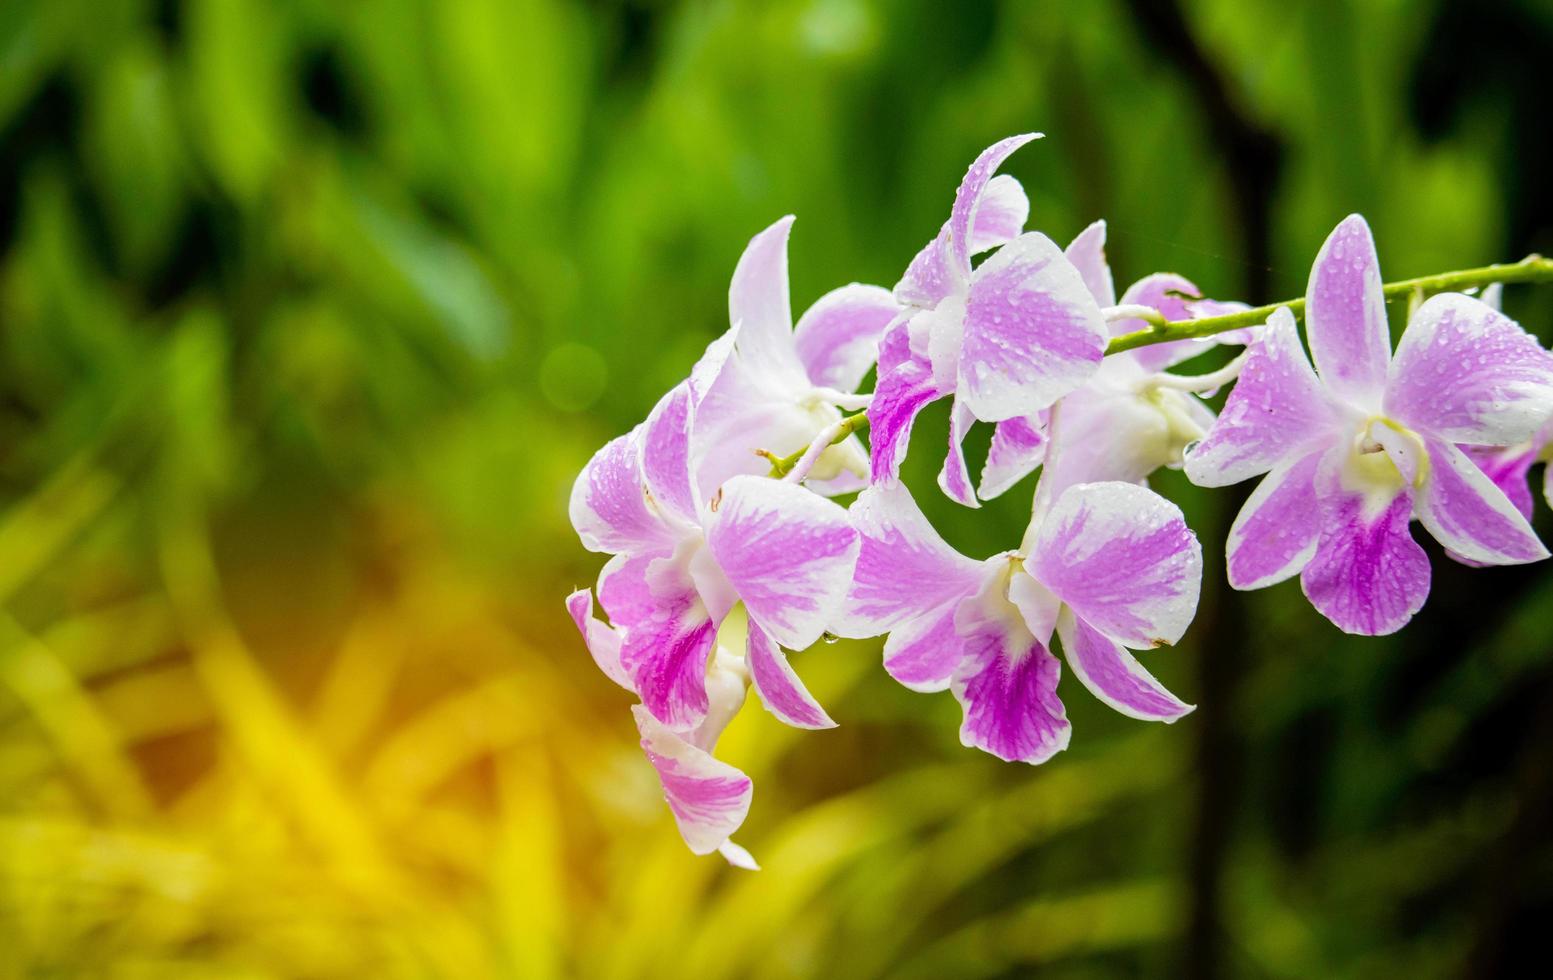 orquídeas florescendo em um fundo verde natural foto